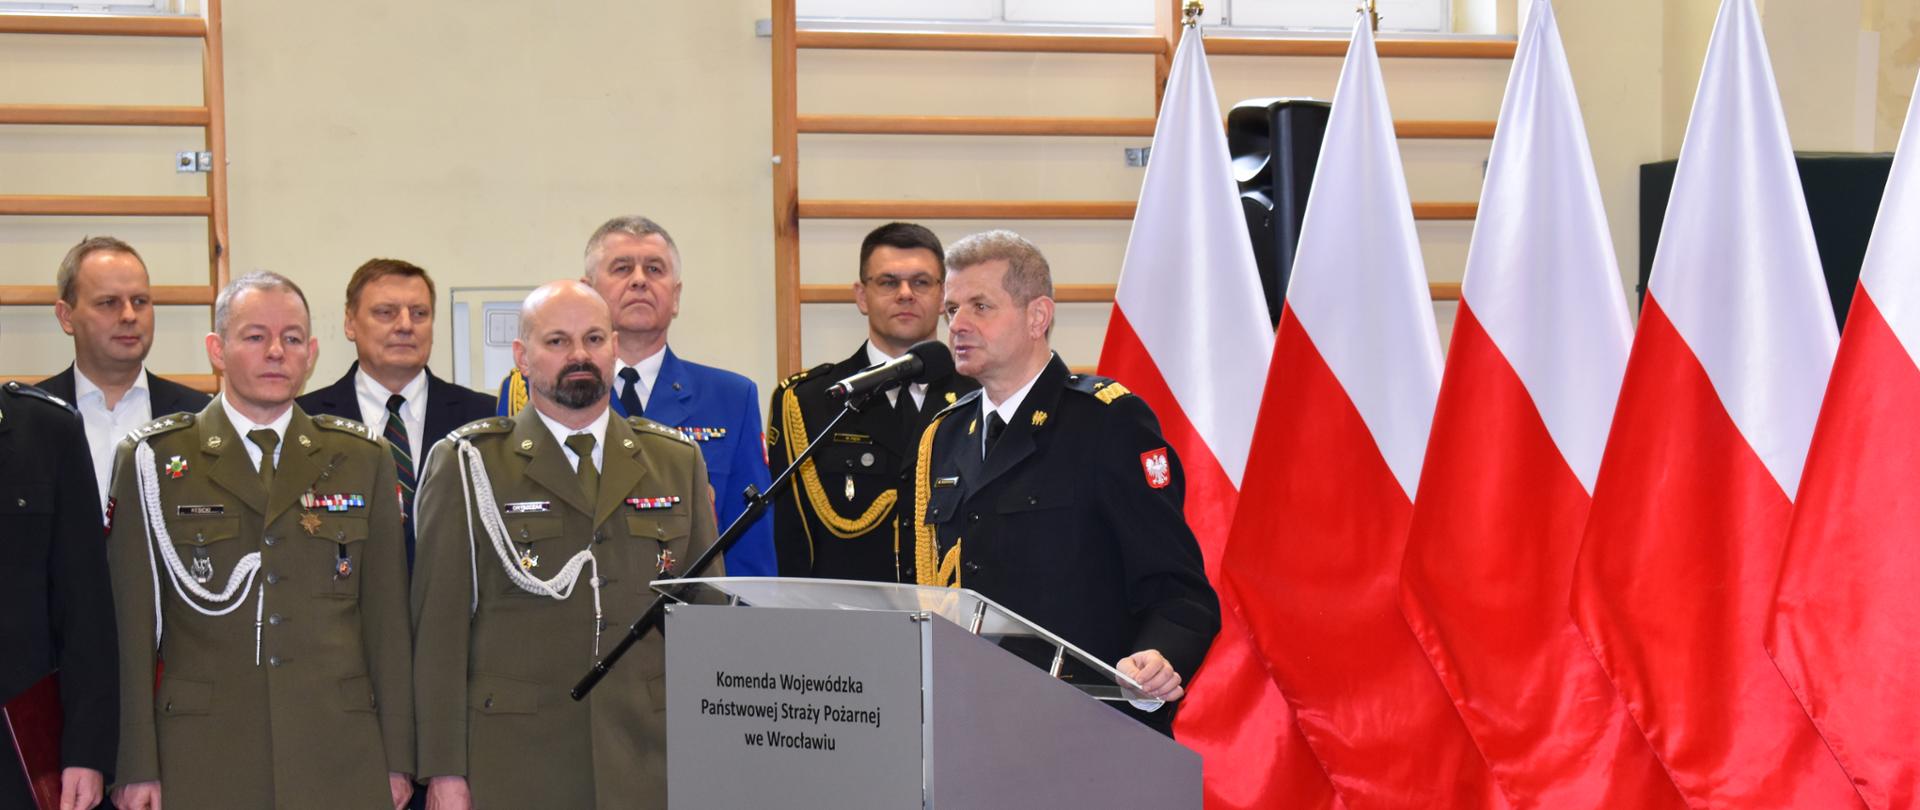 Podziękowania za służbę Dolnośląskiego Komendanta Wojewódzkiego PSP nadbryg. Marka Kamińskiego.